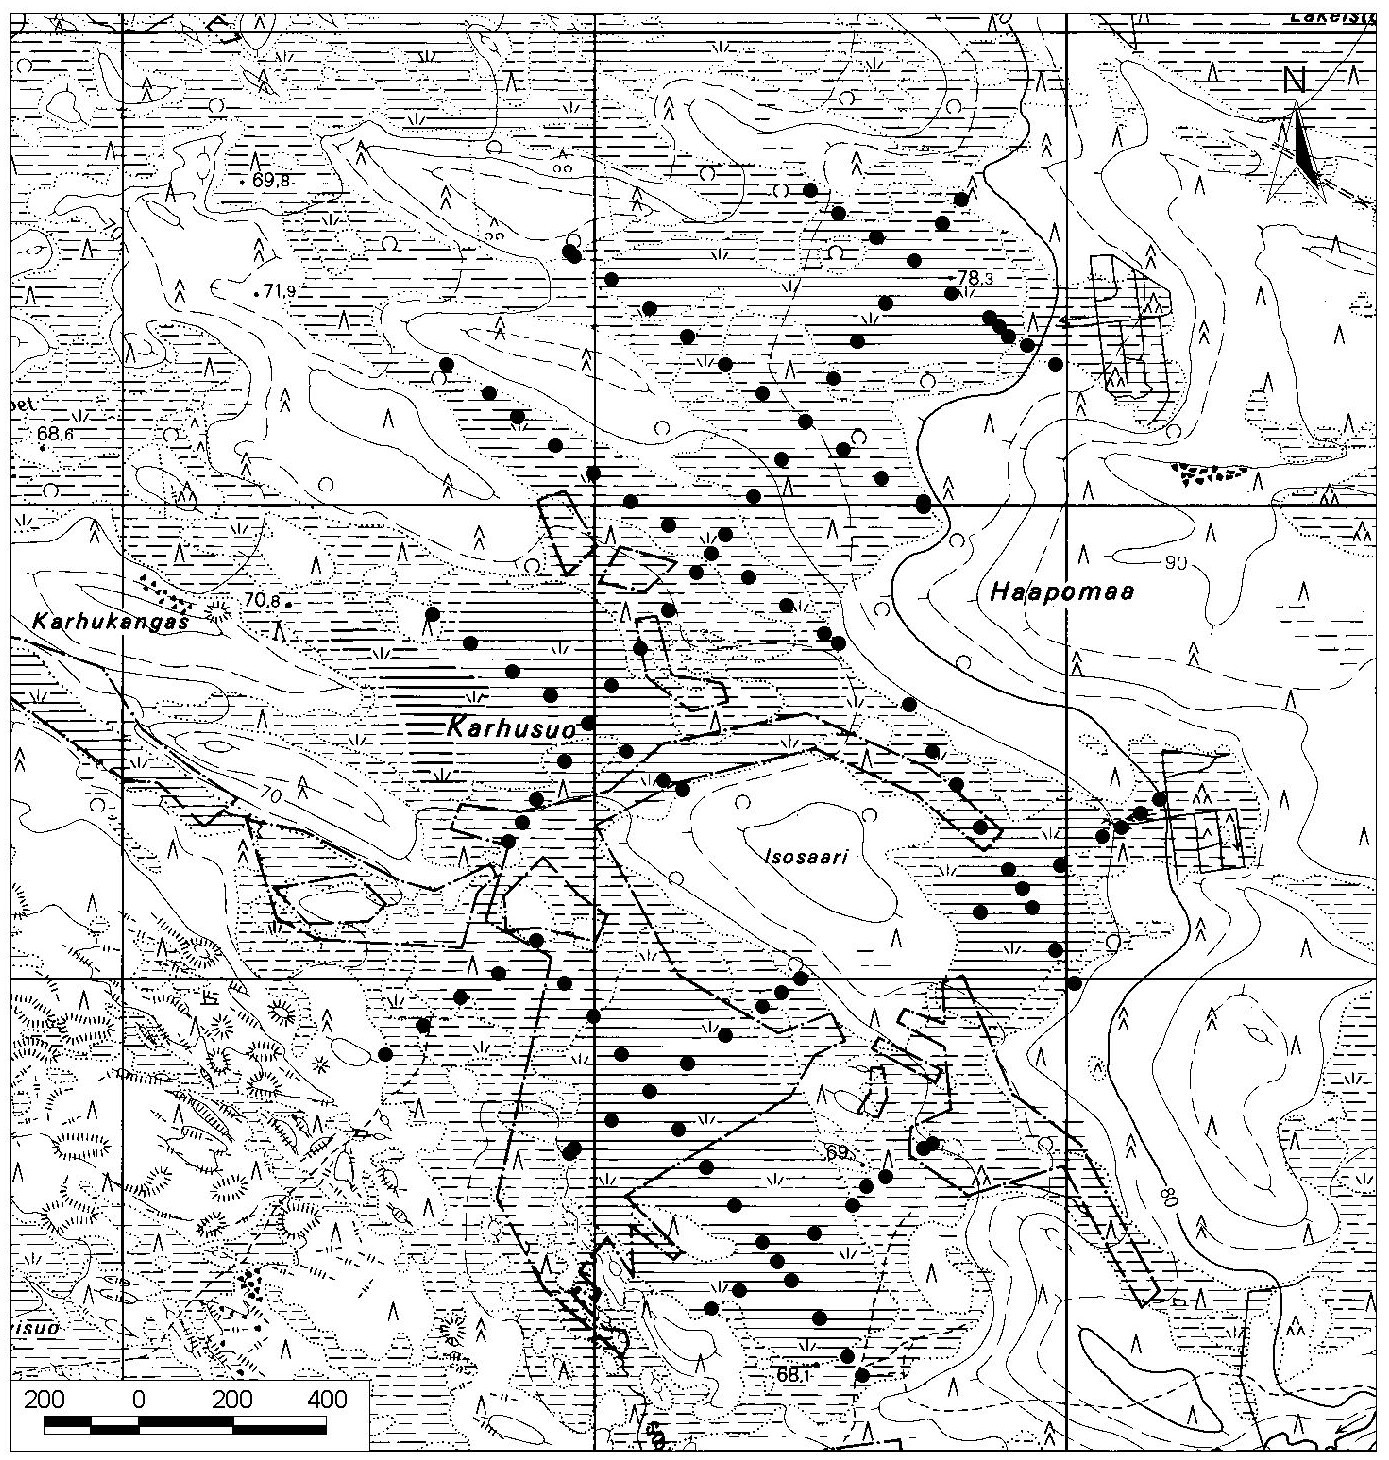 42. Karhusuo Karhusuo (kl. 3511 11) sijaitsee noin 30 km Haukiputaan kirkolta itäkoilliseen (kuva 44). Suo on muodoltaan epäyhtenäinen rajoittuen moreenisaarekkeisiin ja -kankaisiin.